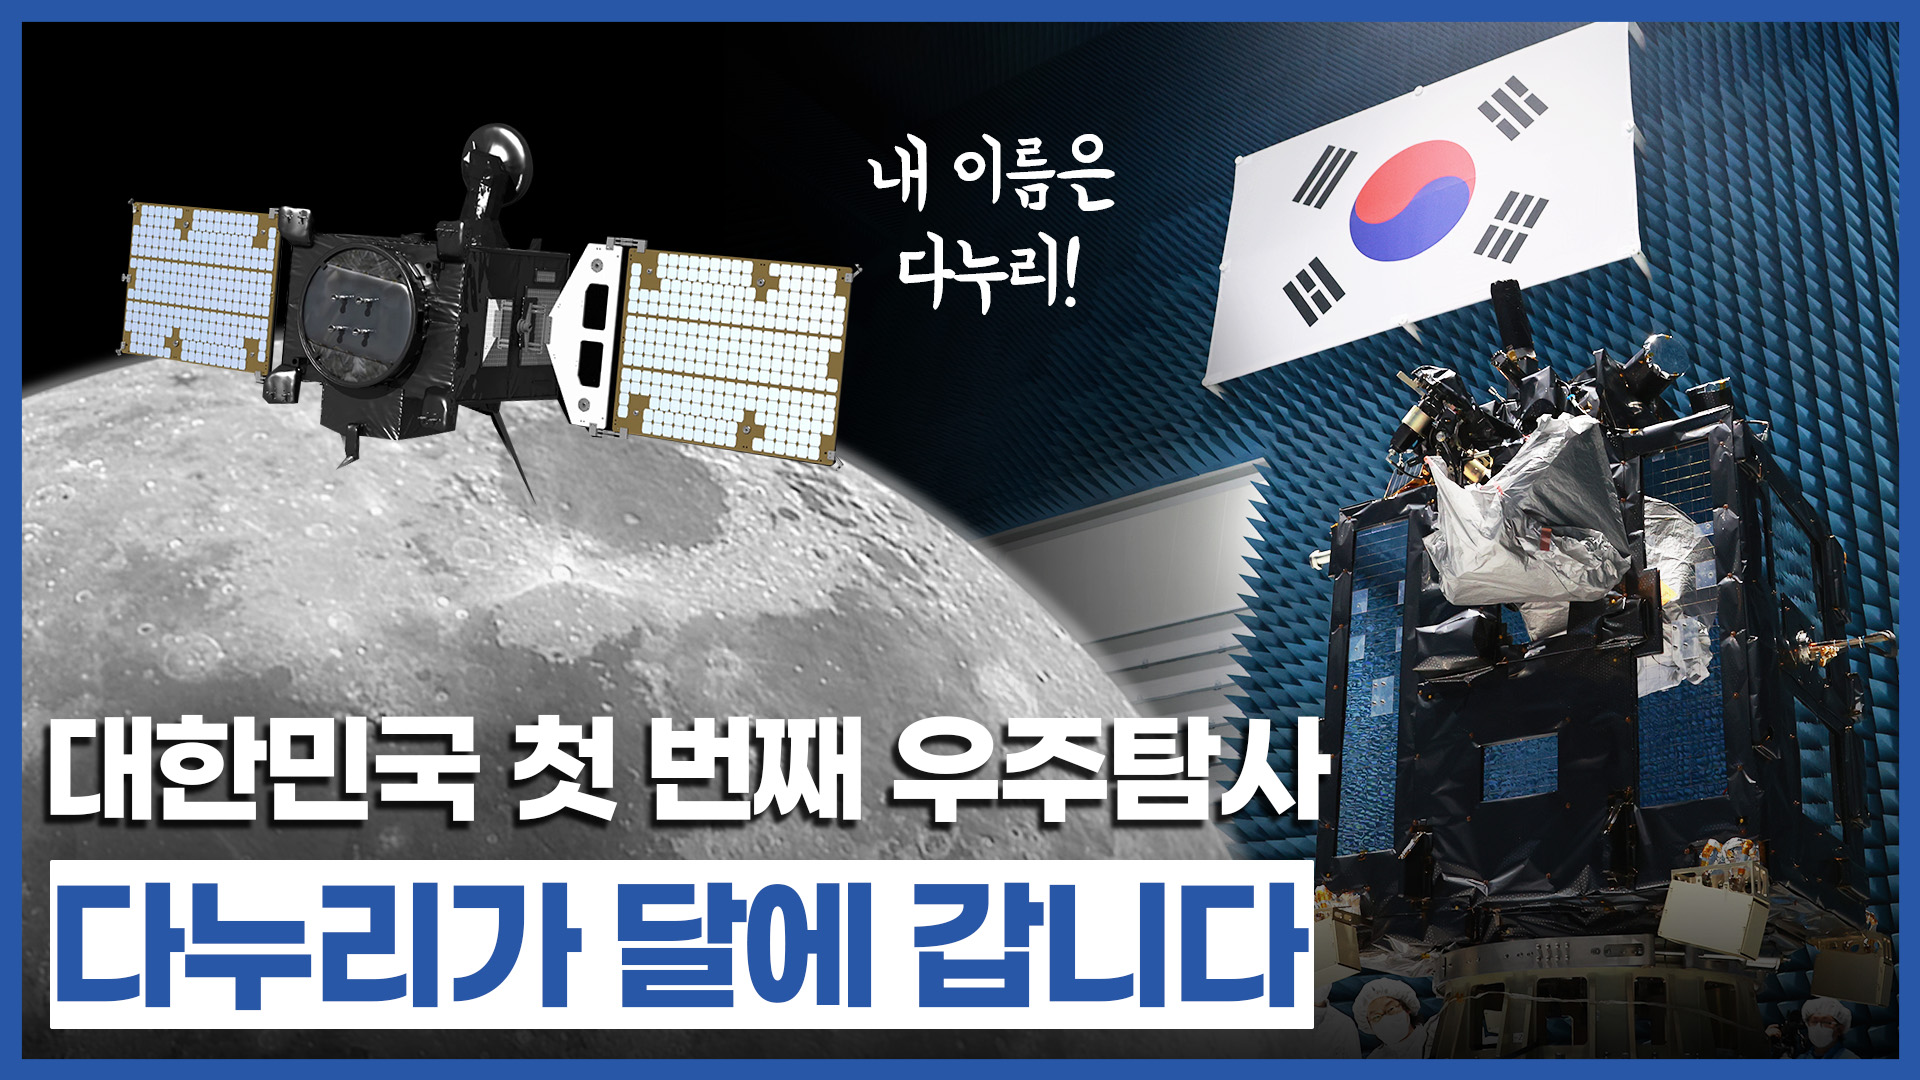 국민이 정한 대한민국 최초 달 탐사선의 이름 「다누리」 대한민국 우주탐사의 첫 장을 열다!